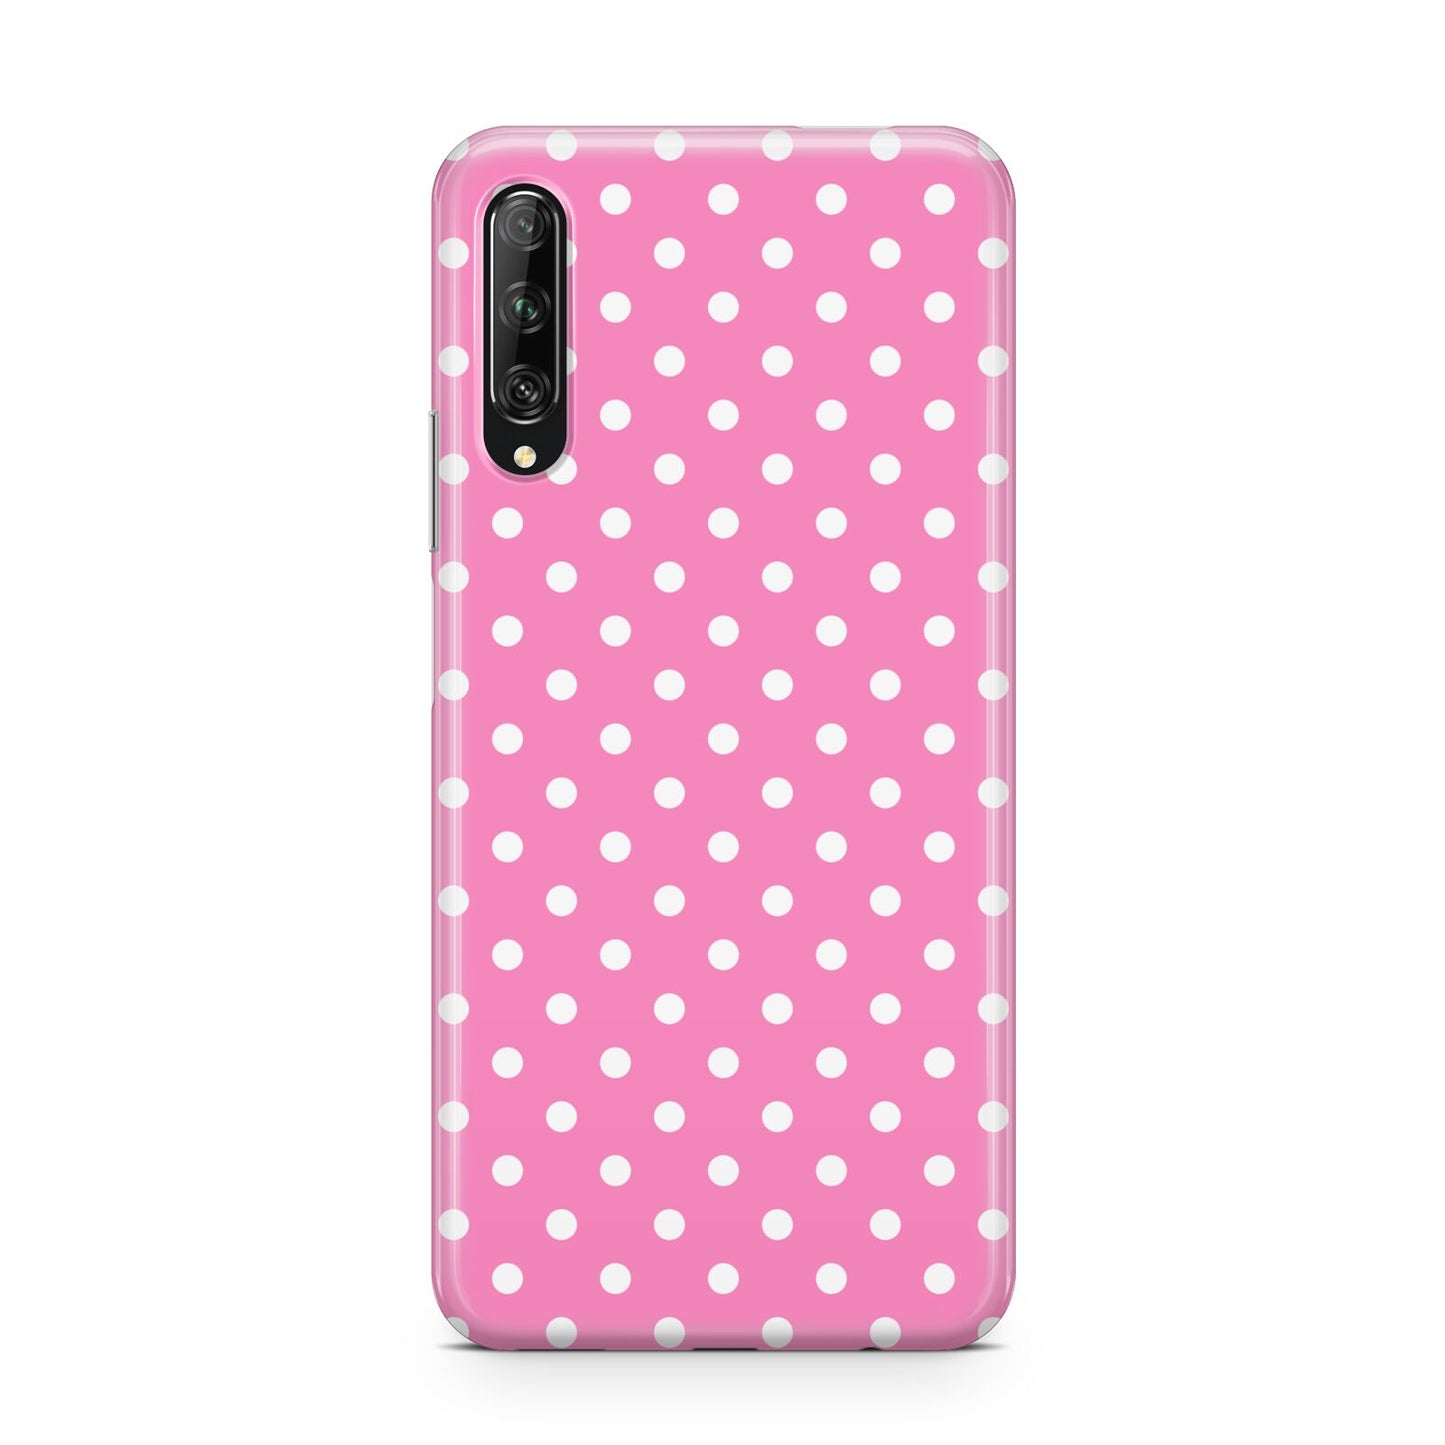 Pink Polka Dot Huawei P Smart Pro 2019